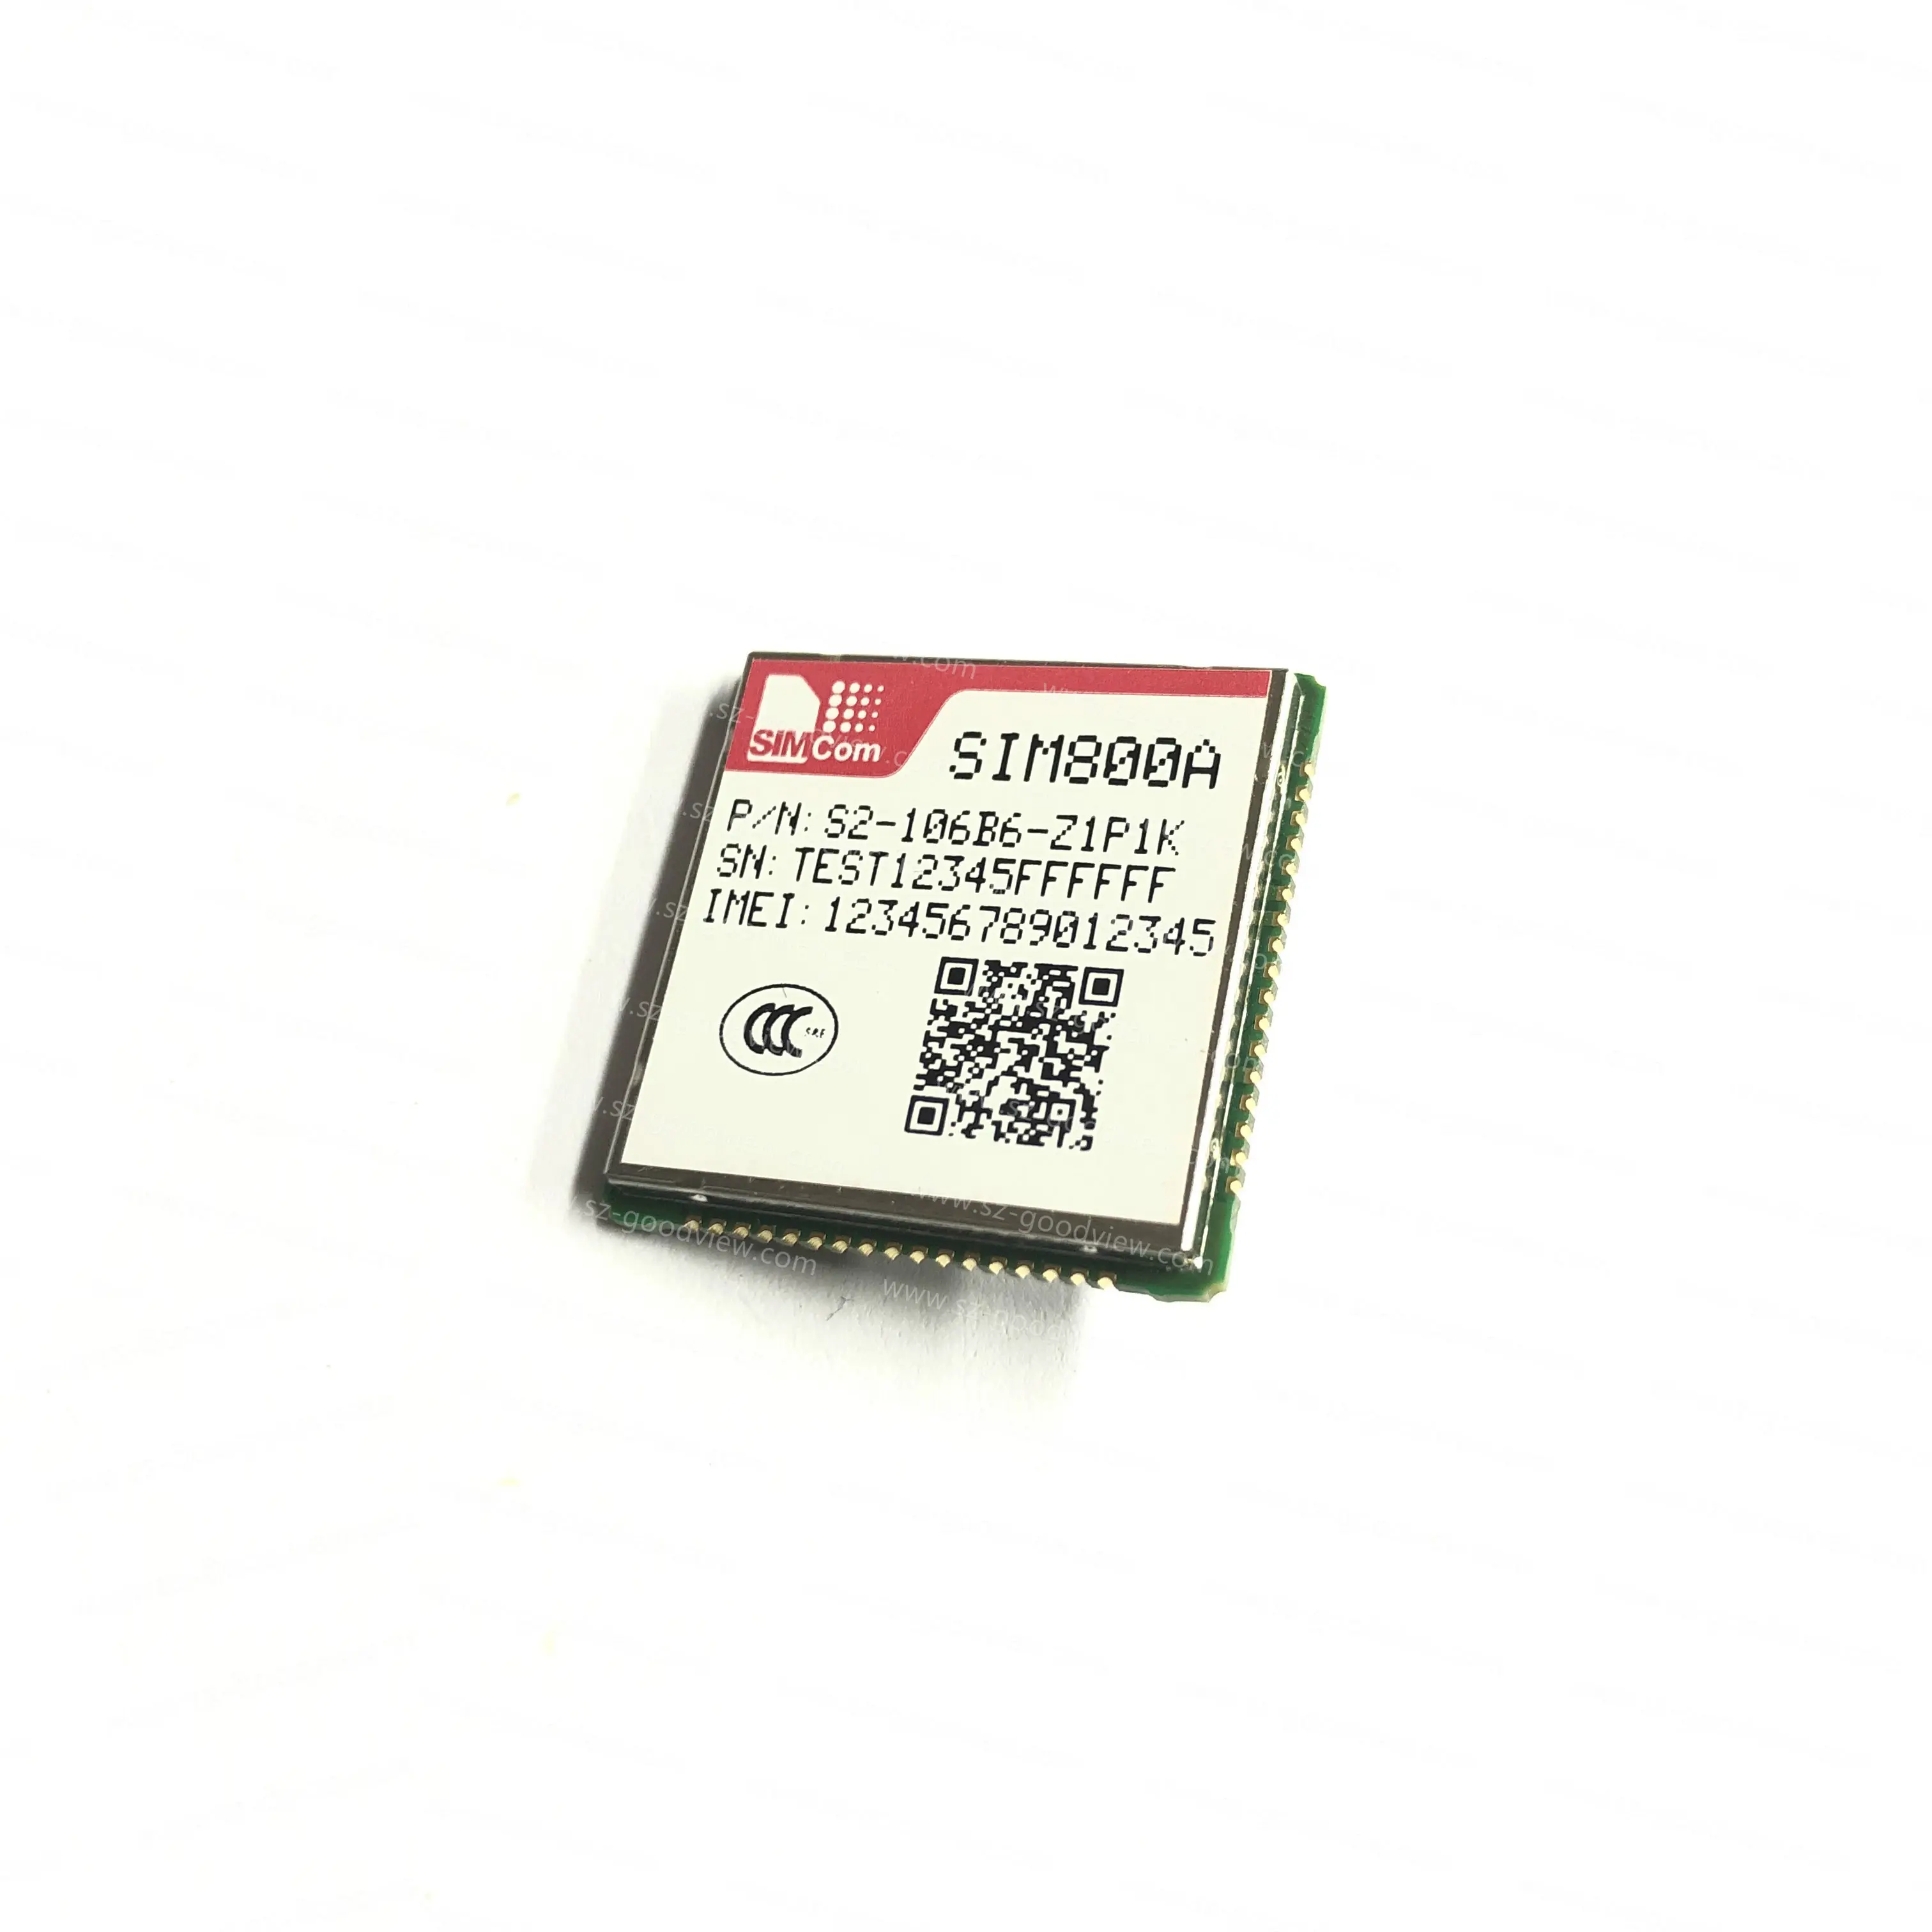 SIM800A 2g GSM GPRSモジュール/モデム/チップ